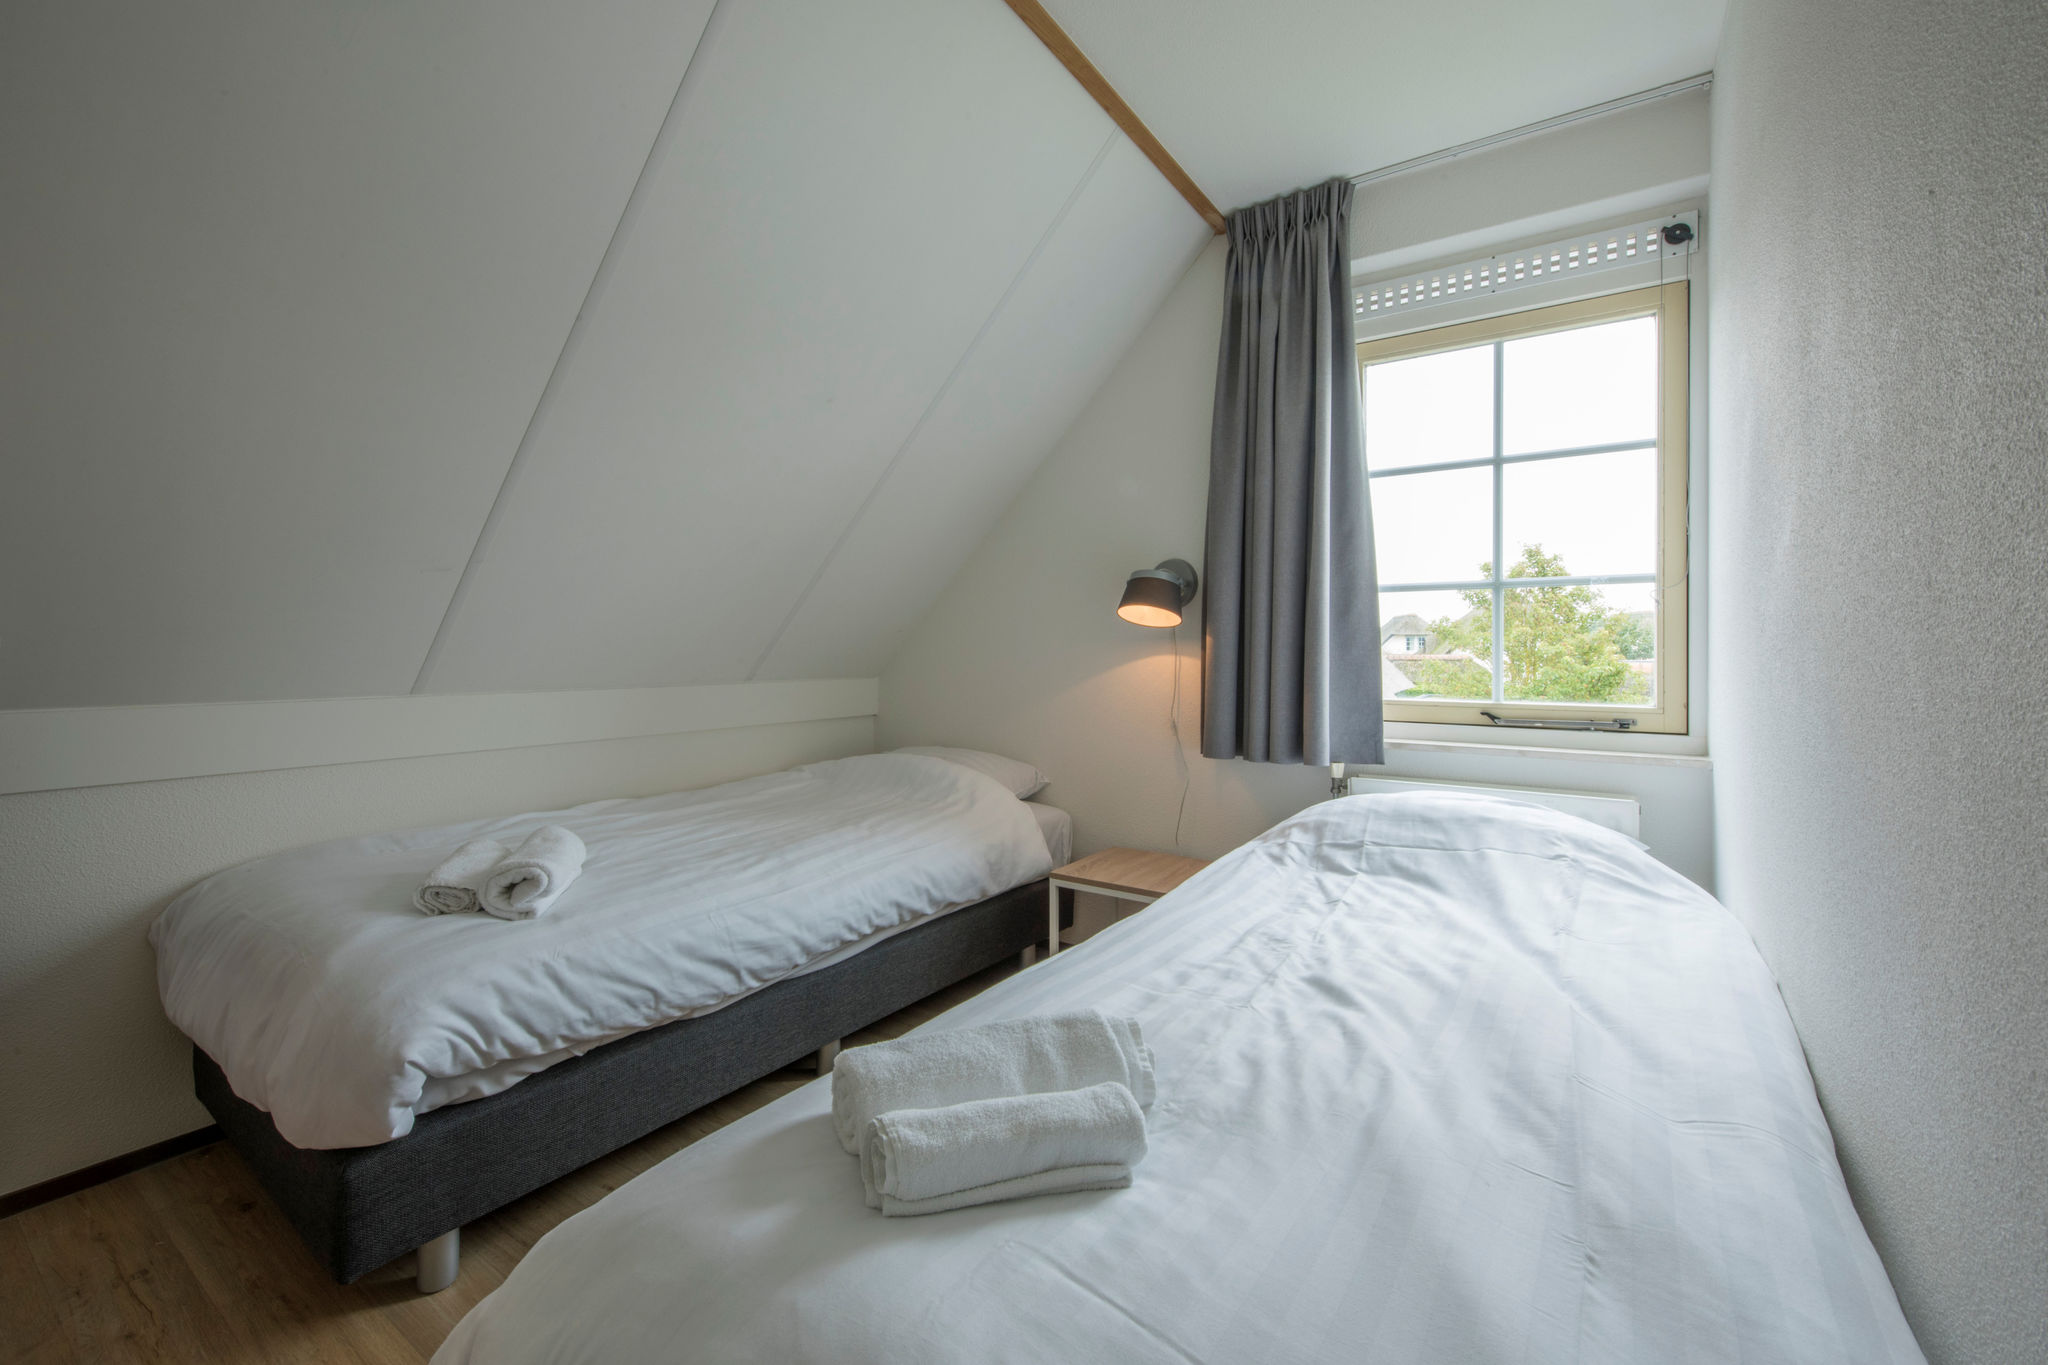 Gerestylde luxe villa met afwasmachine zee op 1km in Domburg